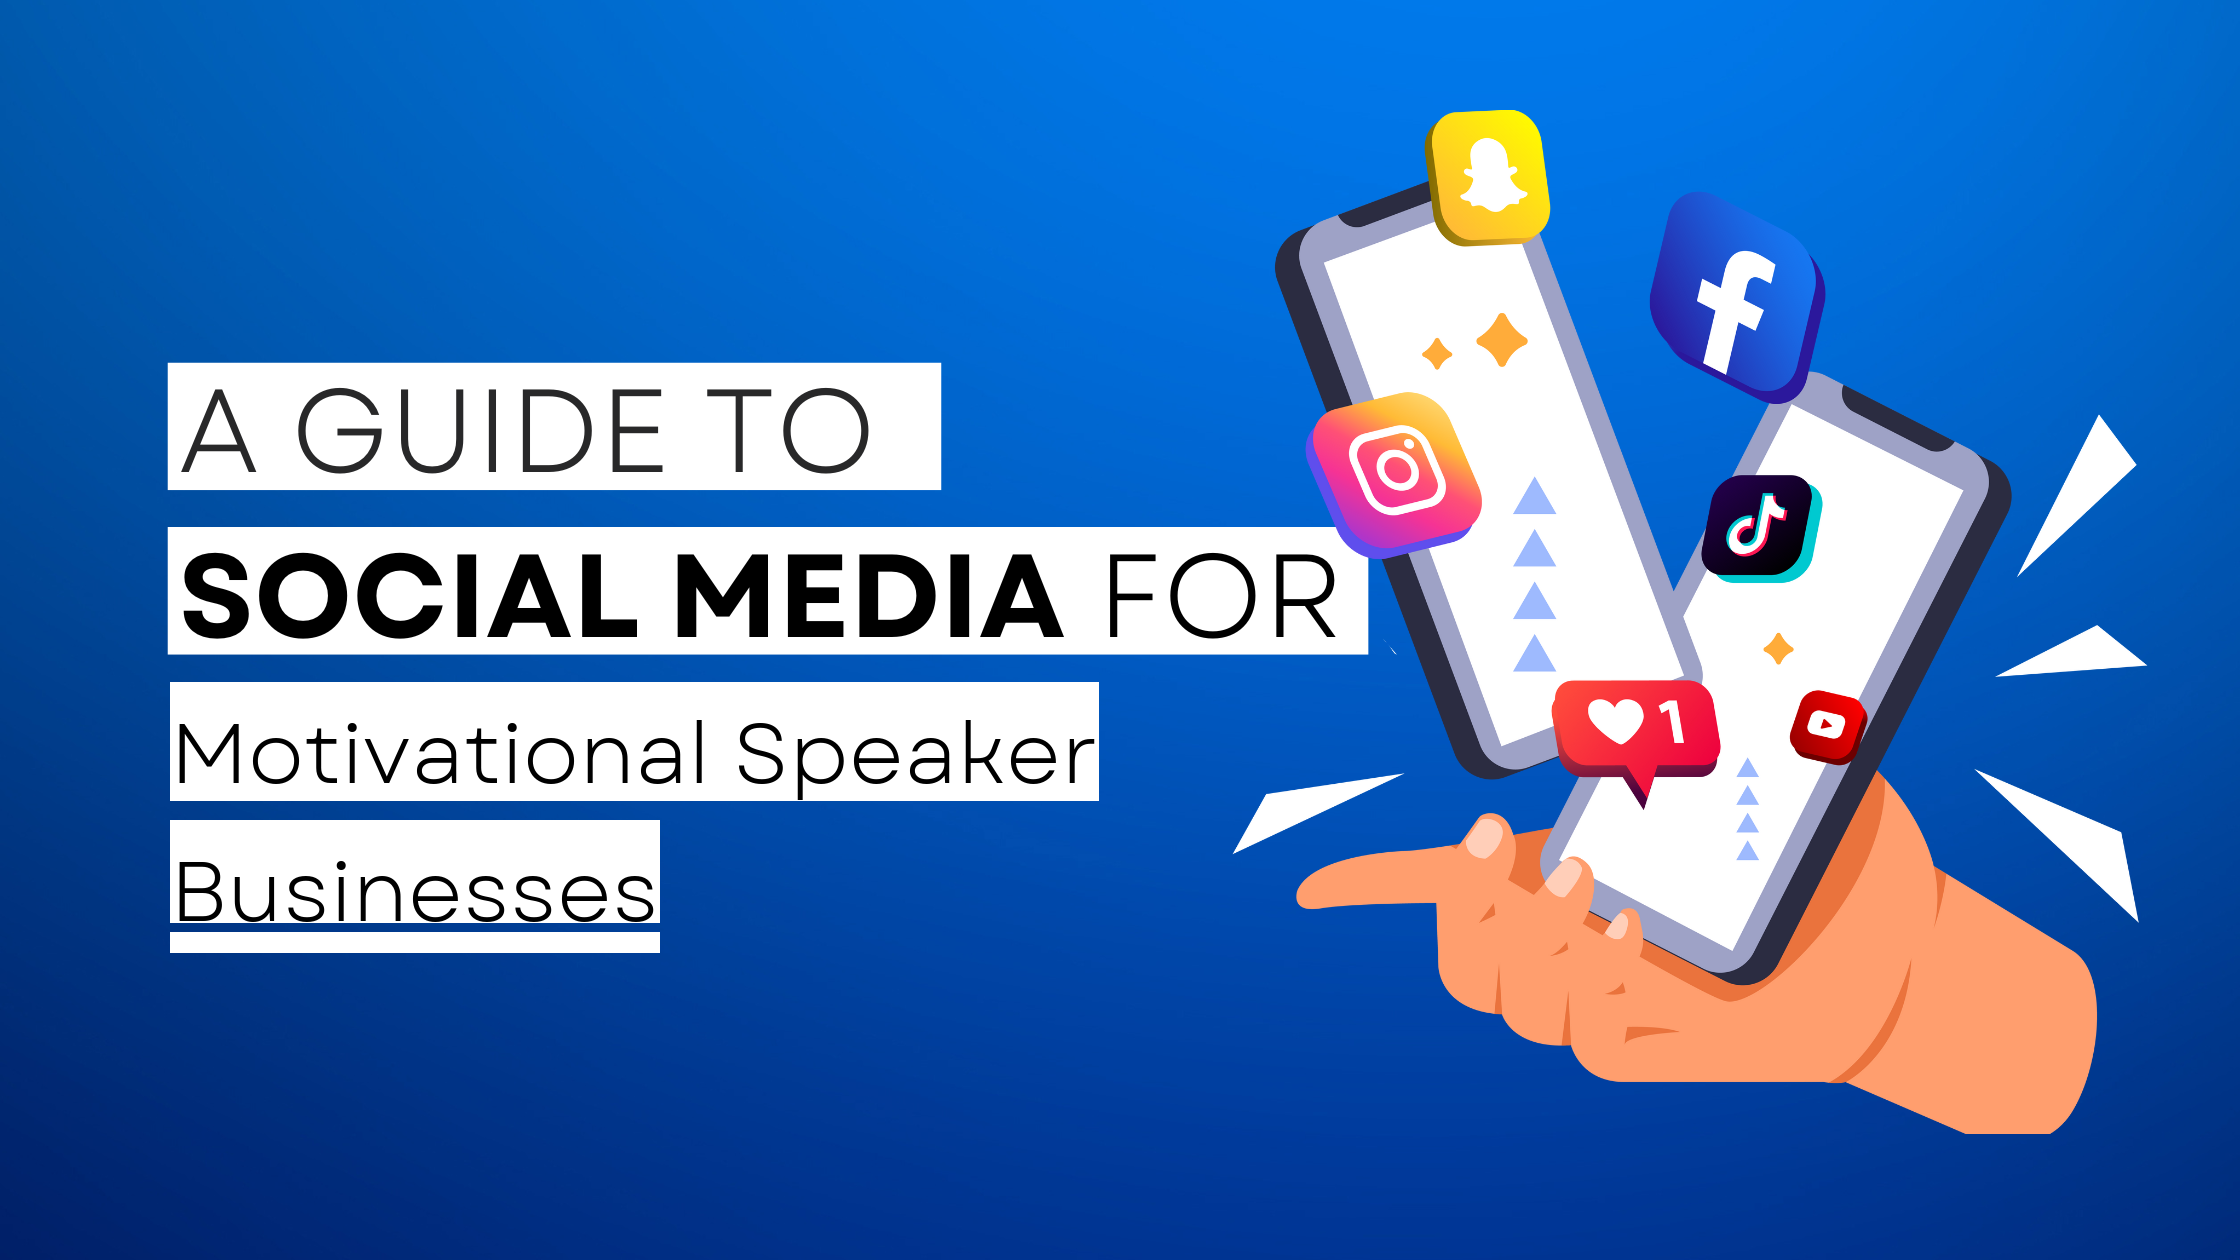 How to start Motivational Speaker on social media